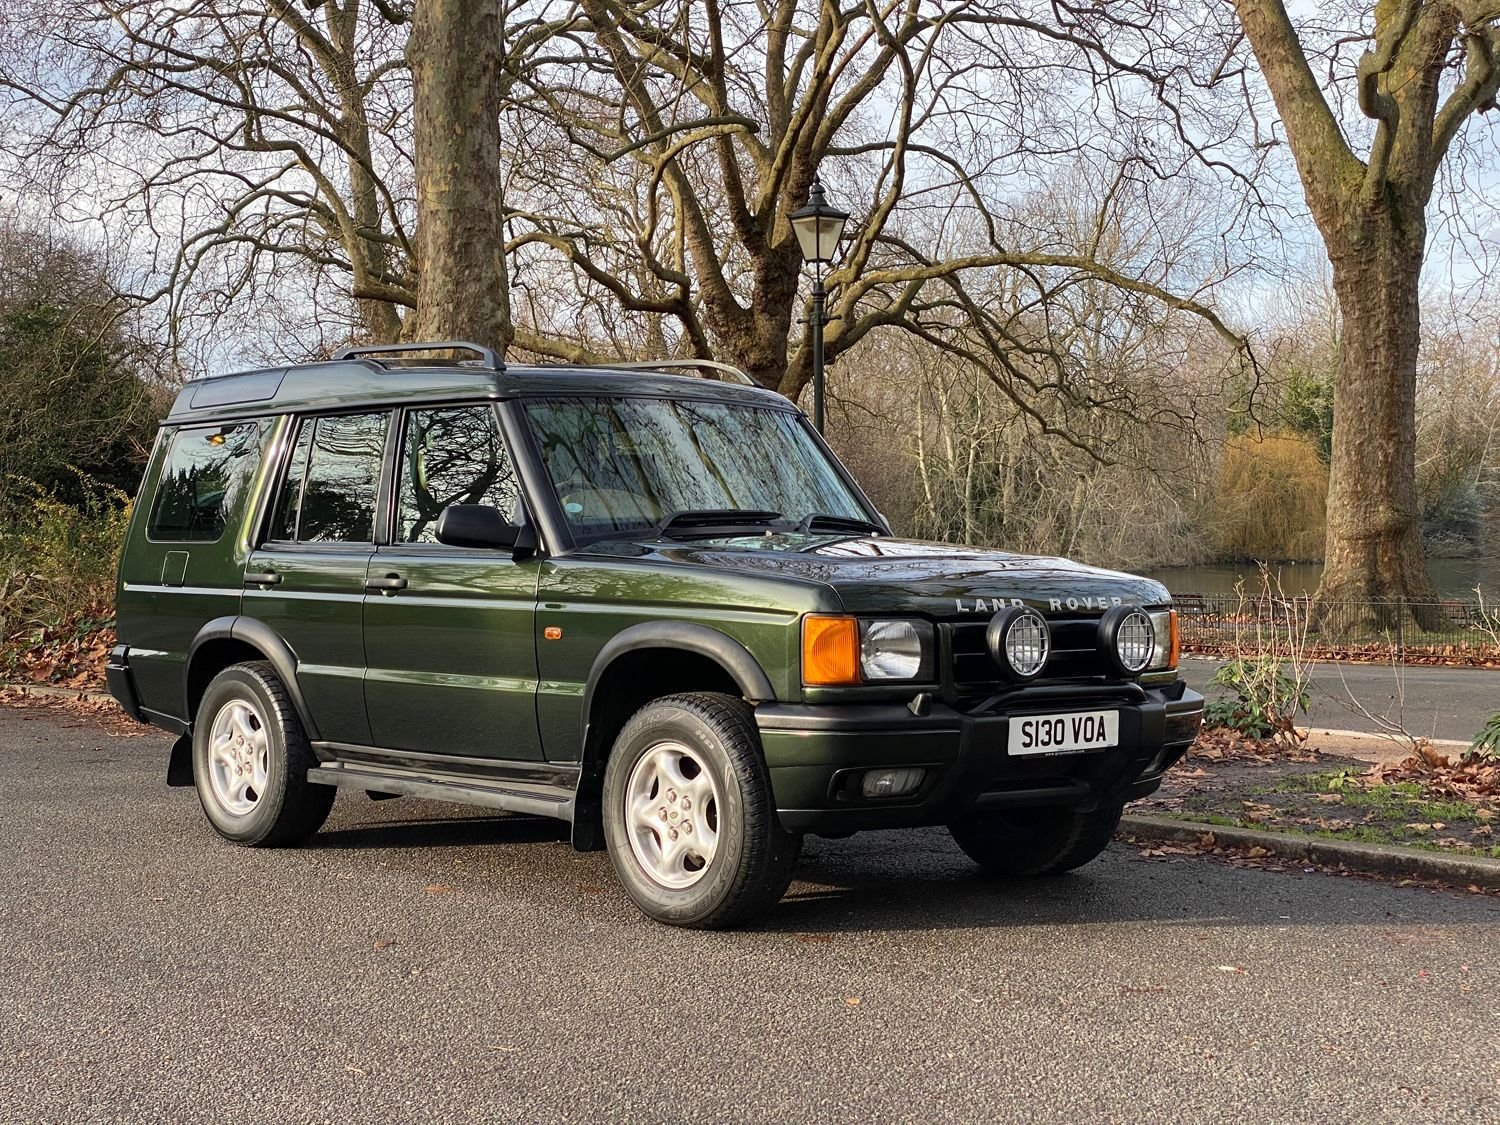 Land Rover Discovery 2. Land Rover Discovery 1998. Land Rover Discovery 2.7 at. Land Rover Discovery 1998 Зебра. Дискавери 2 отзывы